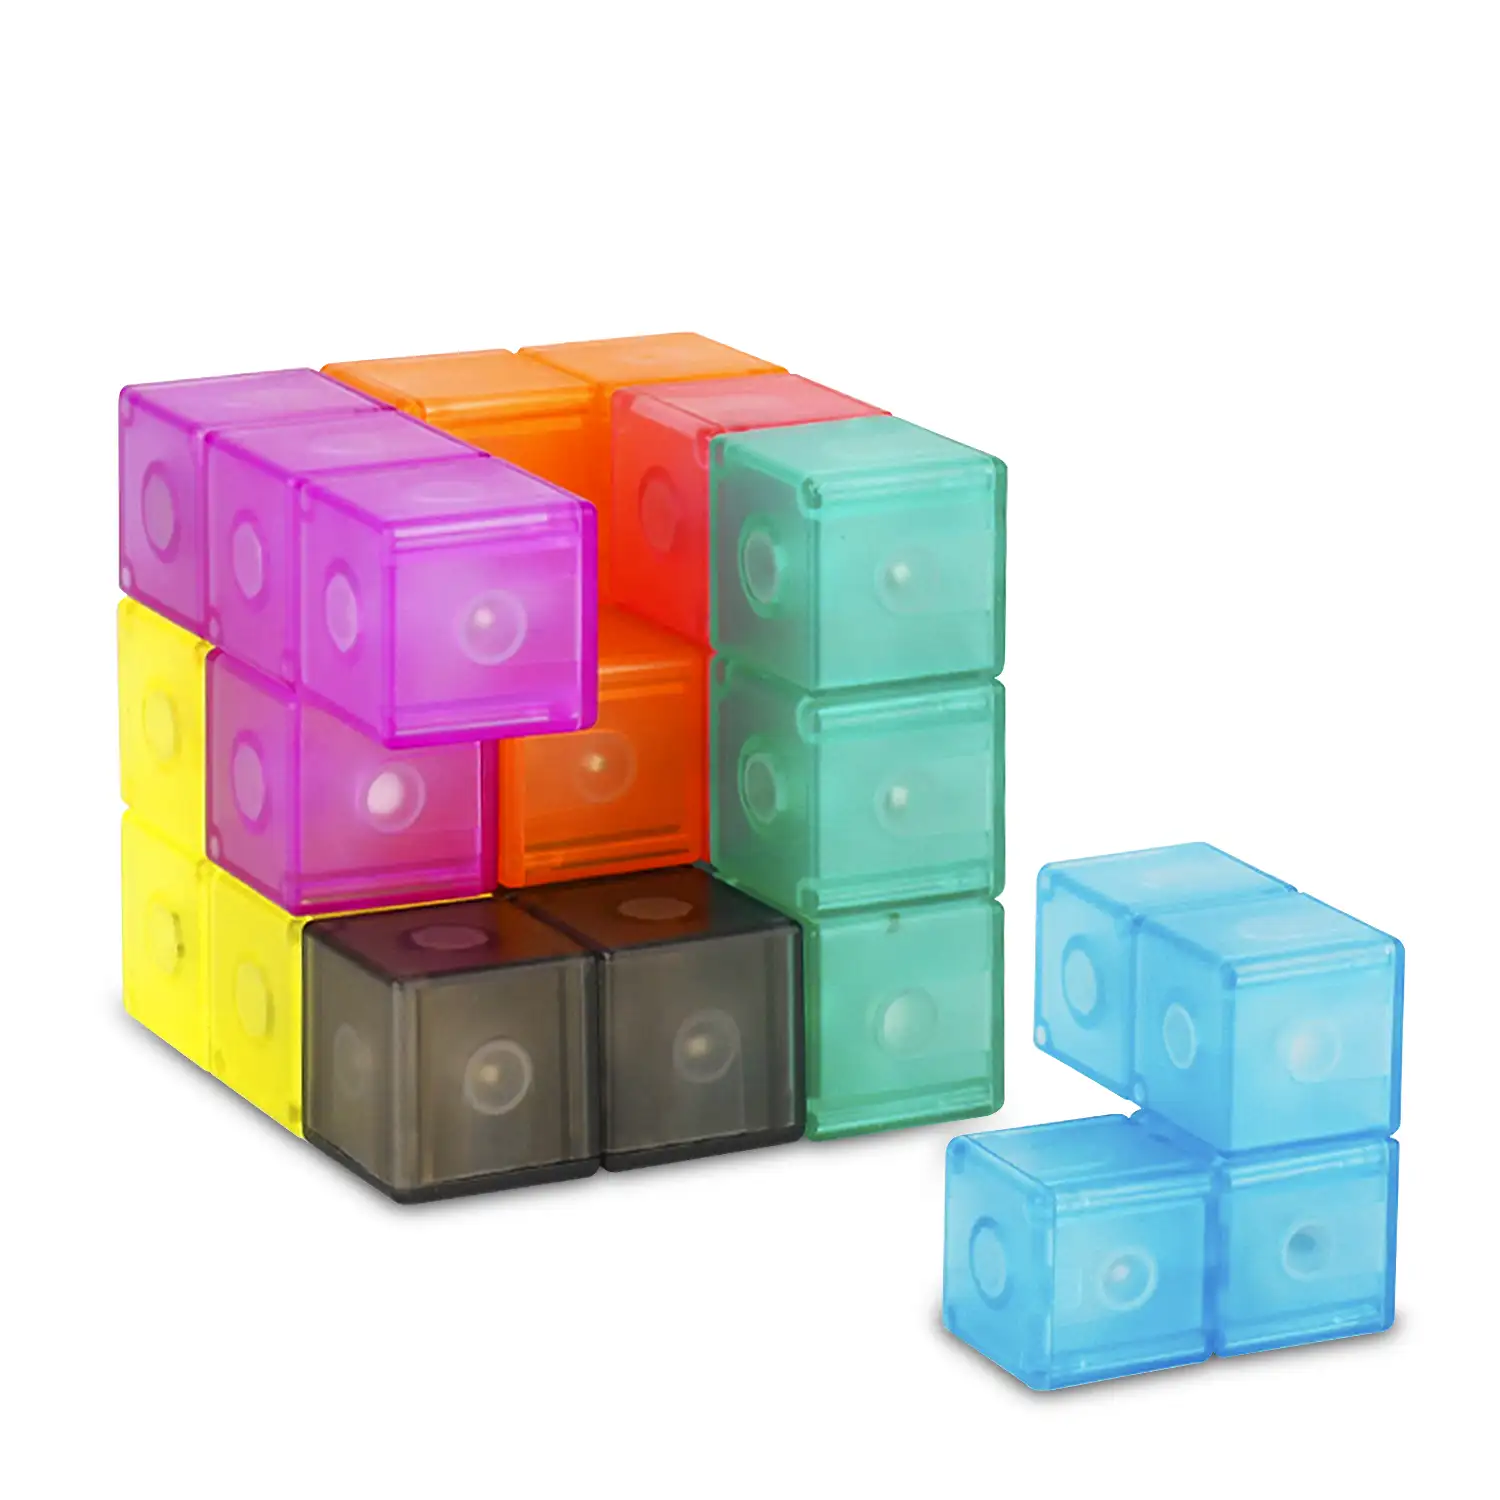 Cubo Twist. en 3 dimensiones, desafios con niveles de dificultad. 7 piezas